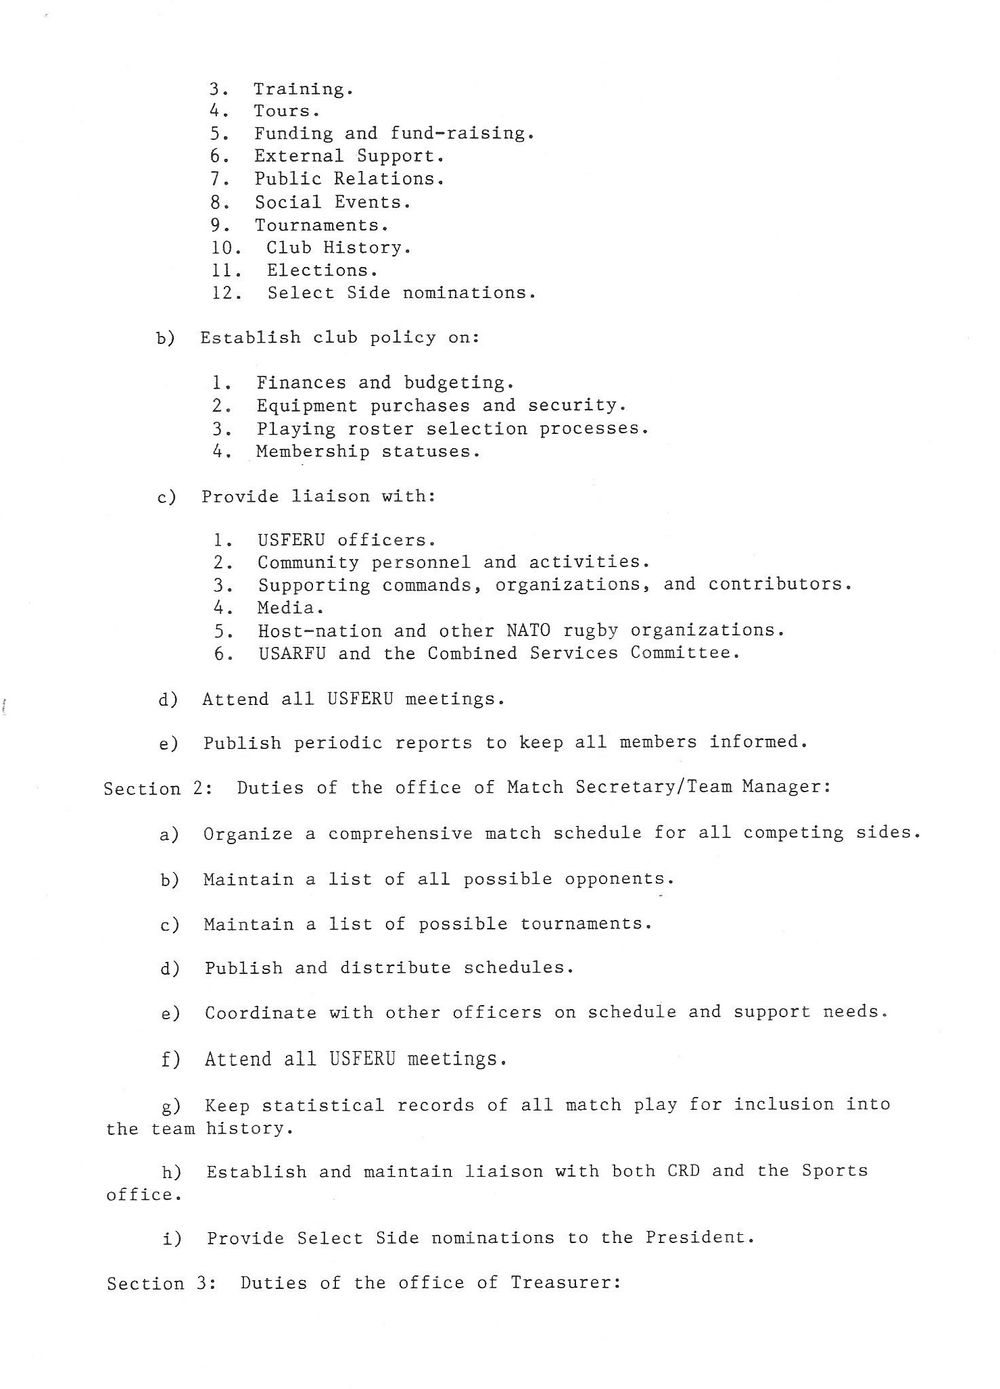 1989 Baumholder constitution 4.jpg